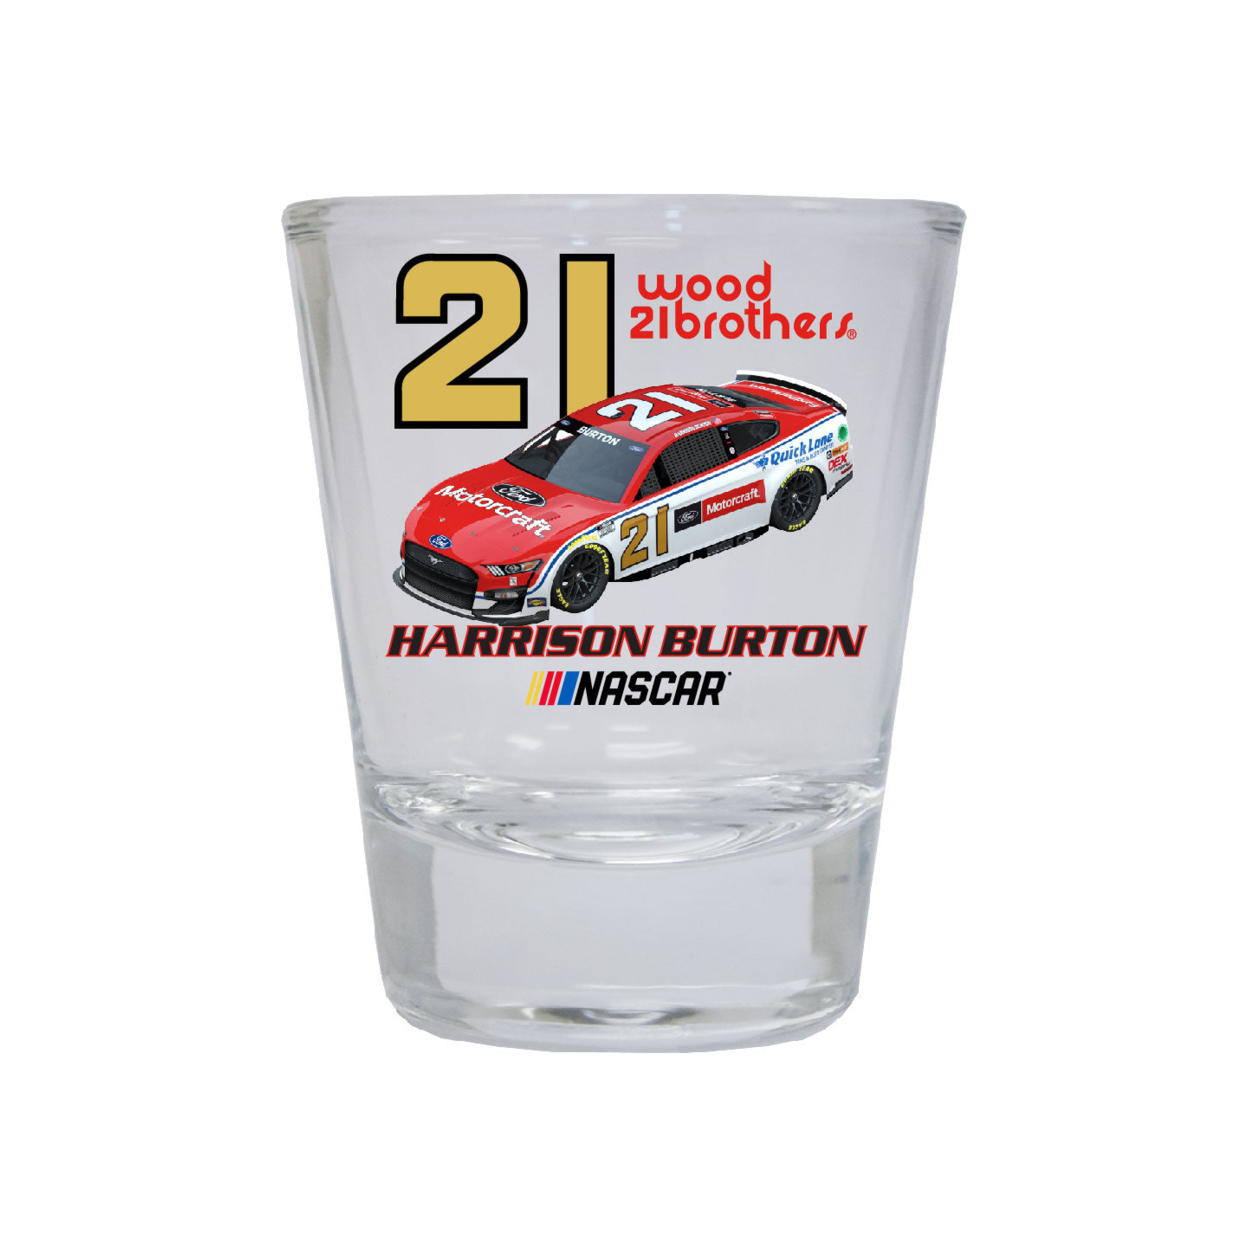 #21 Harrison Burton NASCAR Officially Licensed Round Shot Glass